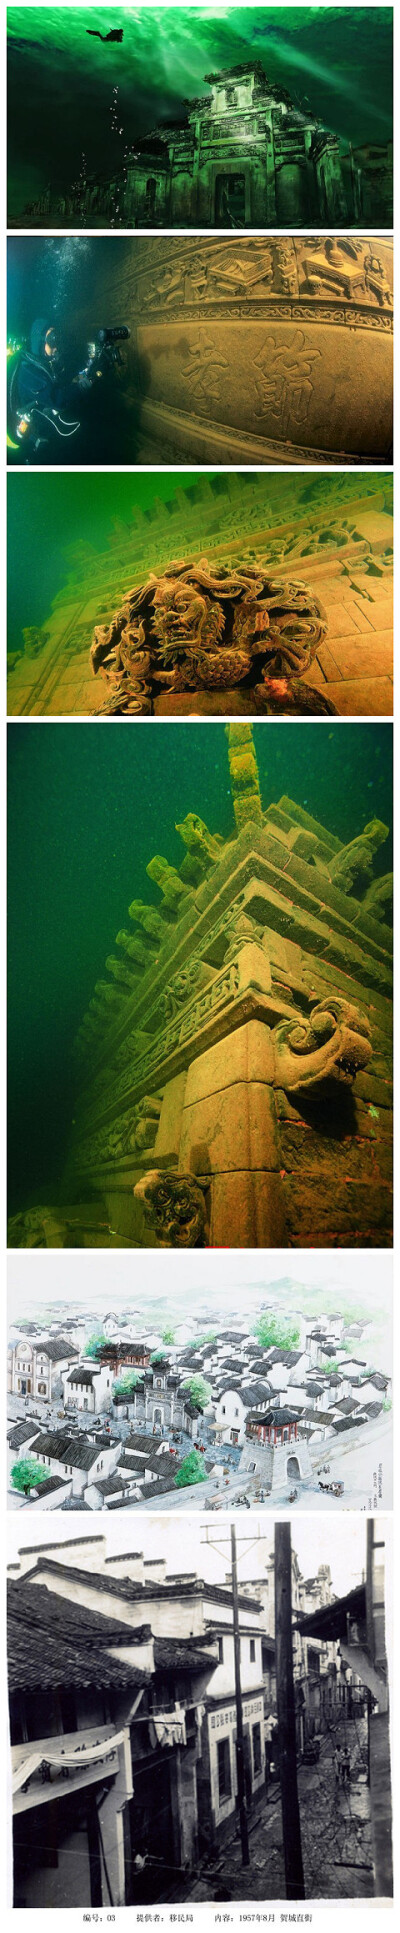 国际考古界把水下遗迹,包括沉船和建筑物,称为时间胶囊